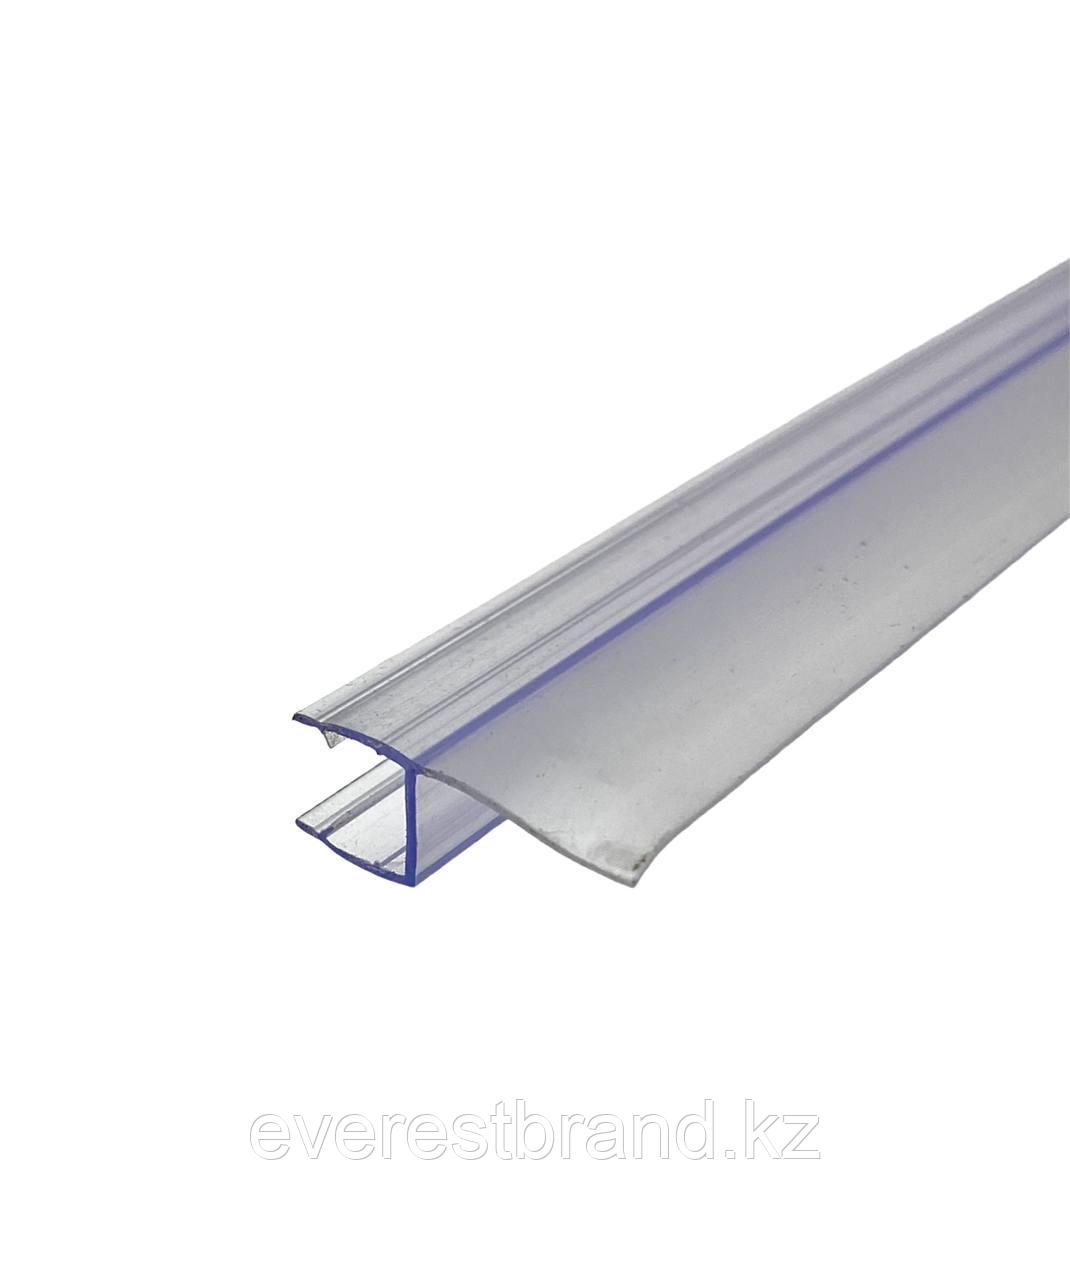 Уплотнитель стекло-стекло 180° прозрачный (8мм) L- 2200мм